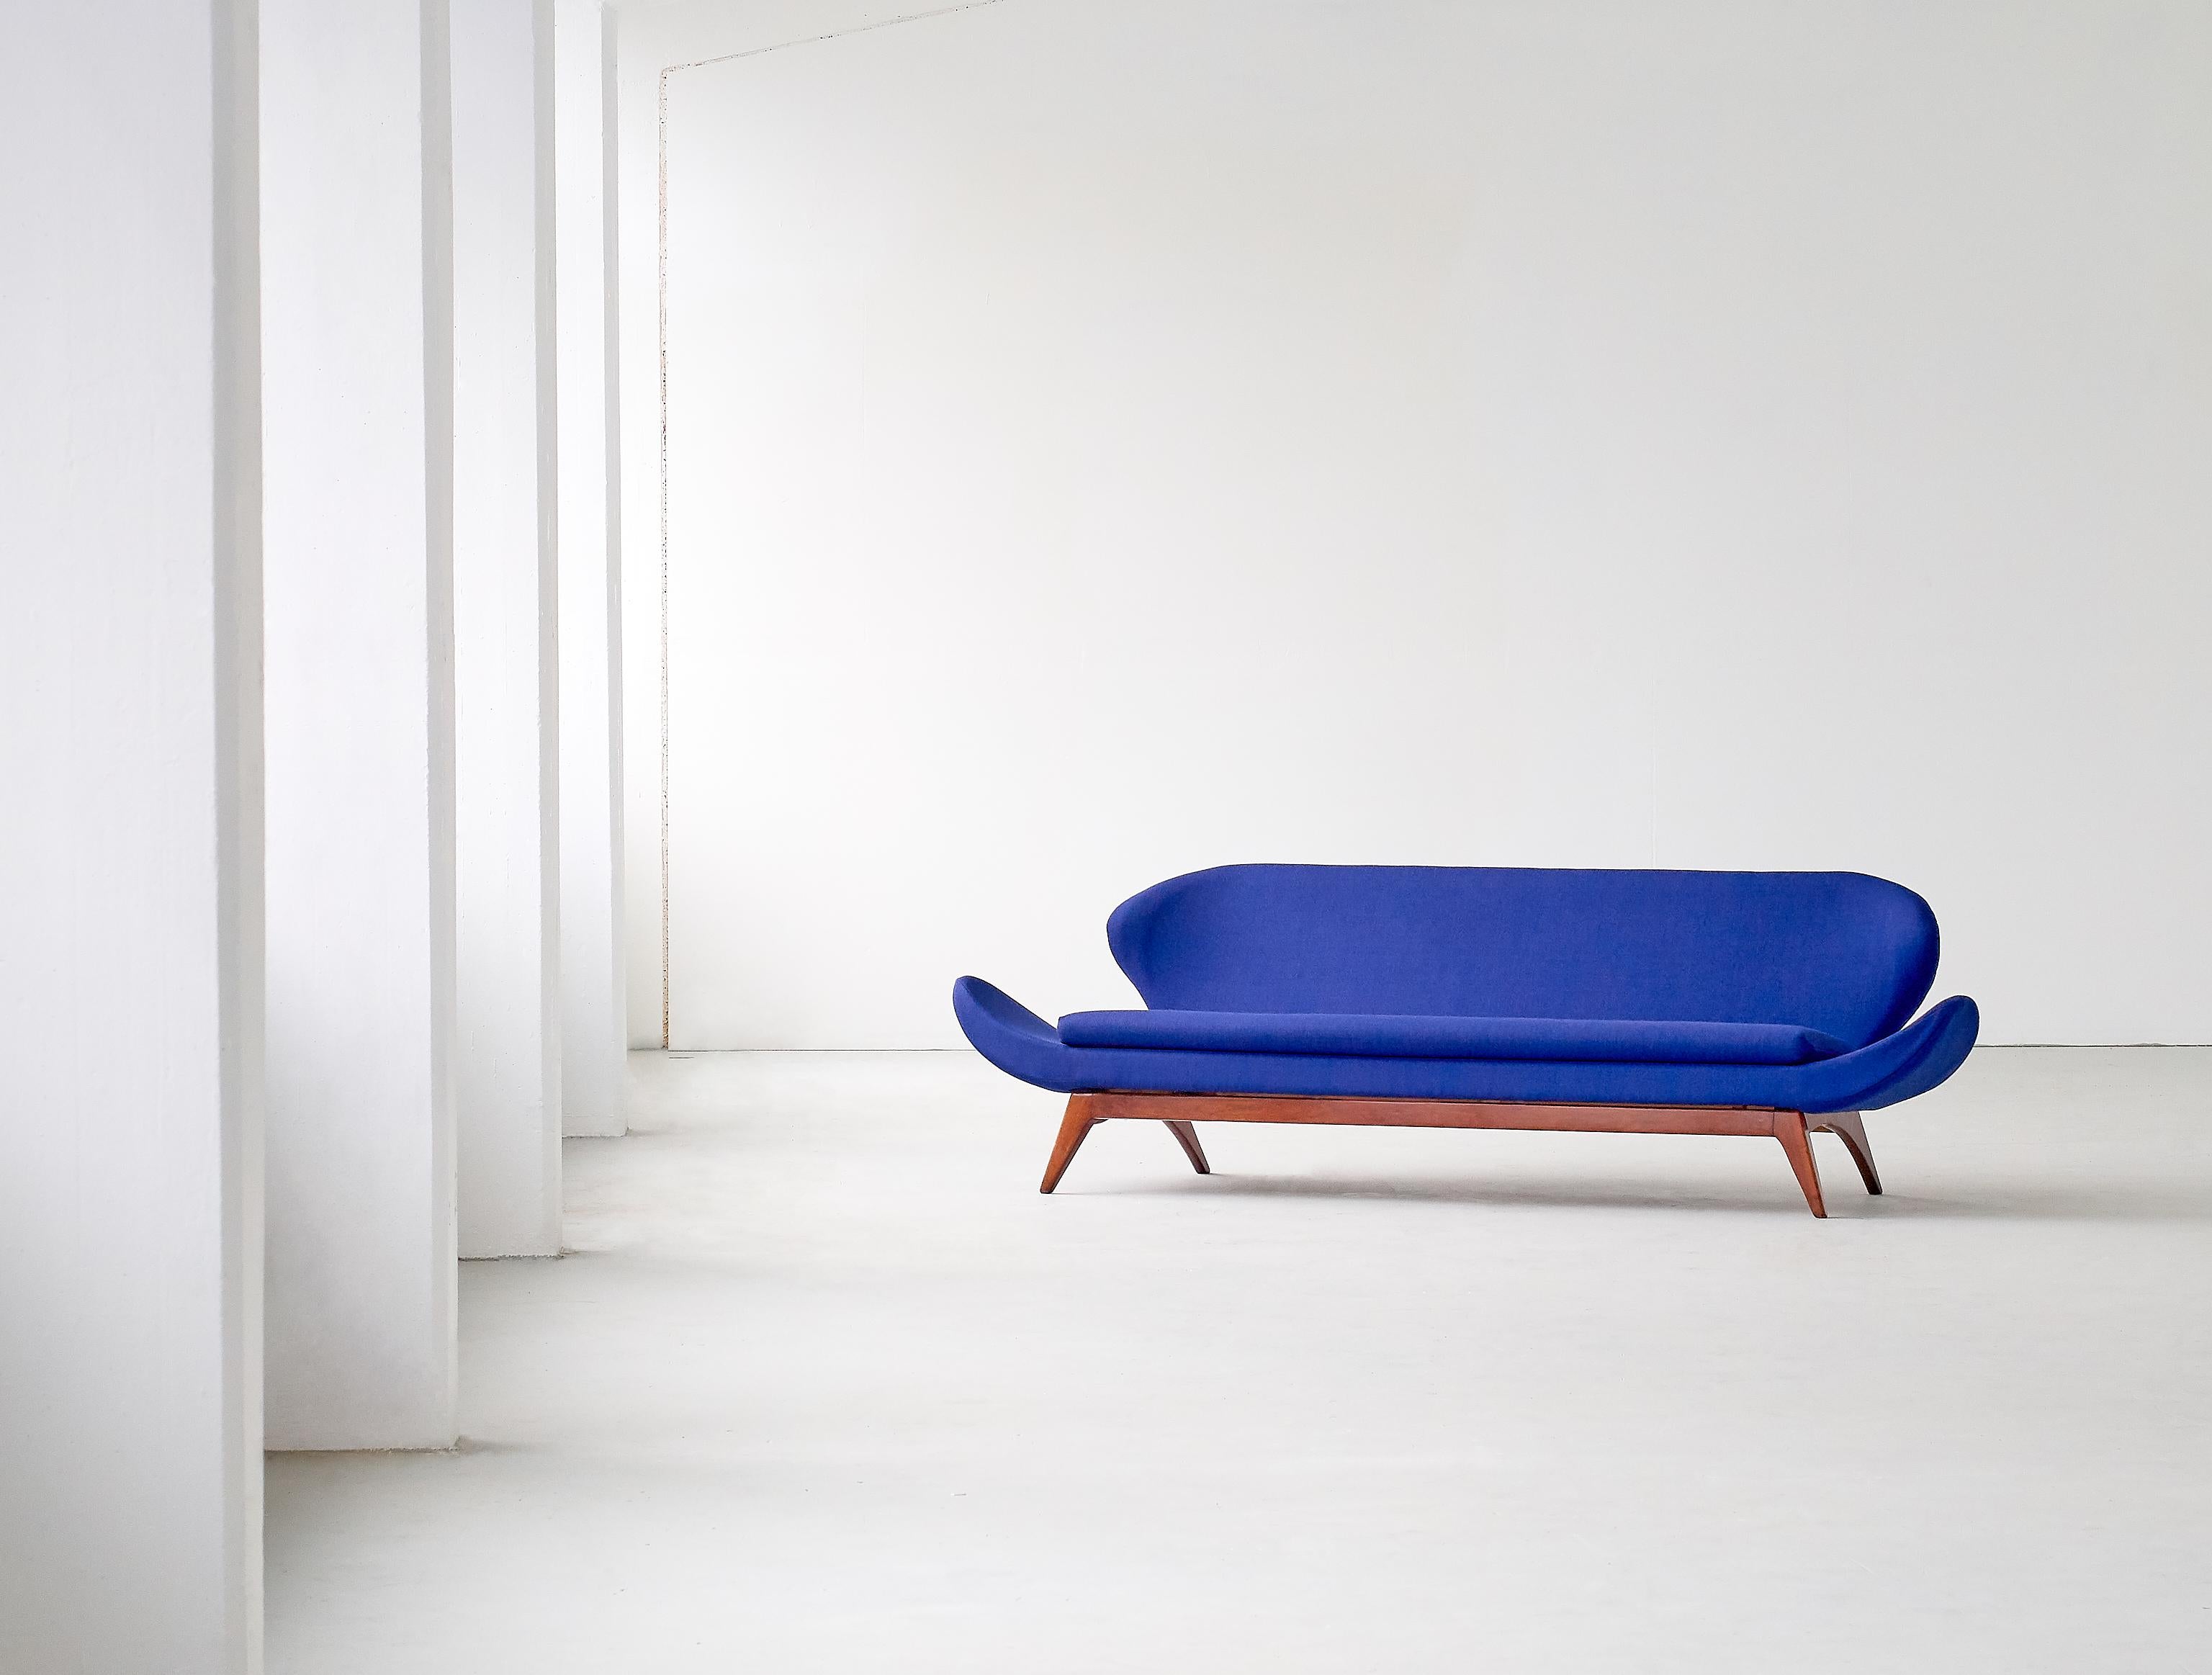 Ce canapé rare a été conçu par Luigi Tiengo et produit par le fabricant canadien Cimon en 1963. La forme sculpturale des accoudoirs allongés, le dossier ailé et la position légèrement inclinée de l'assise donnent au canapé une apparence flottante.